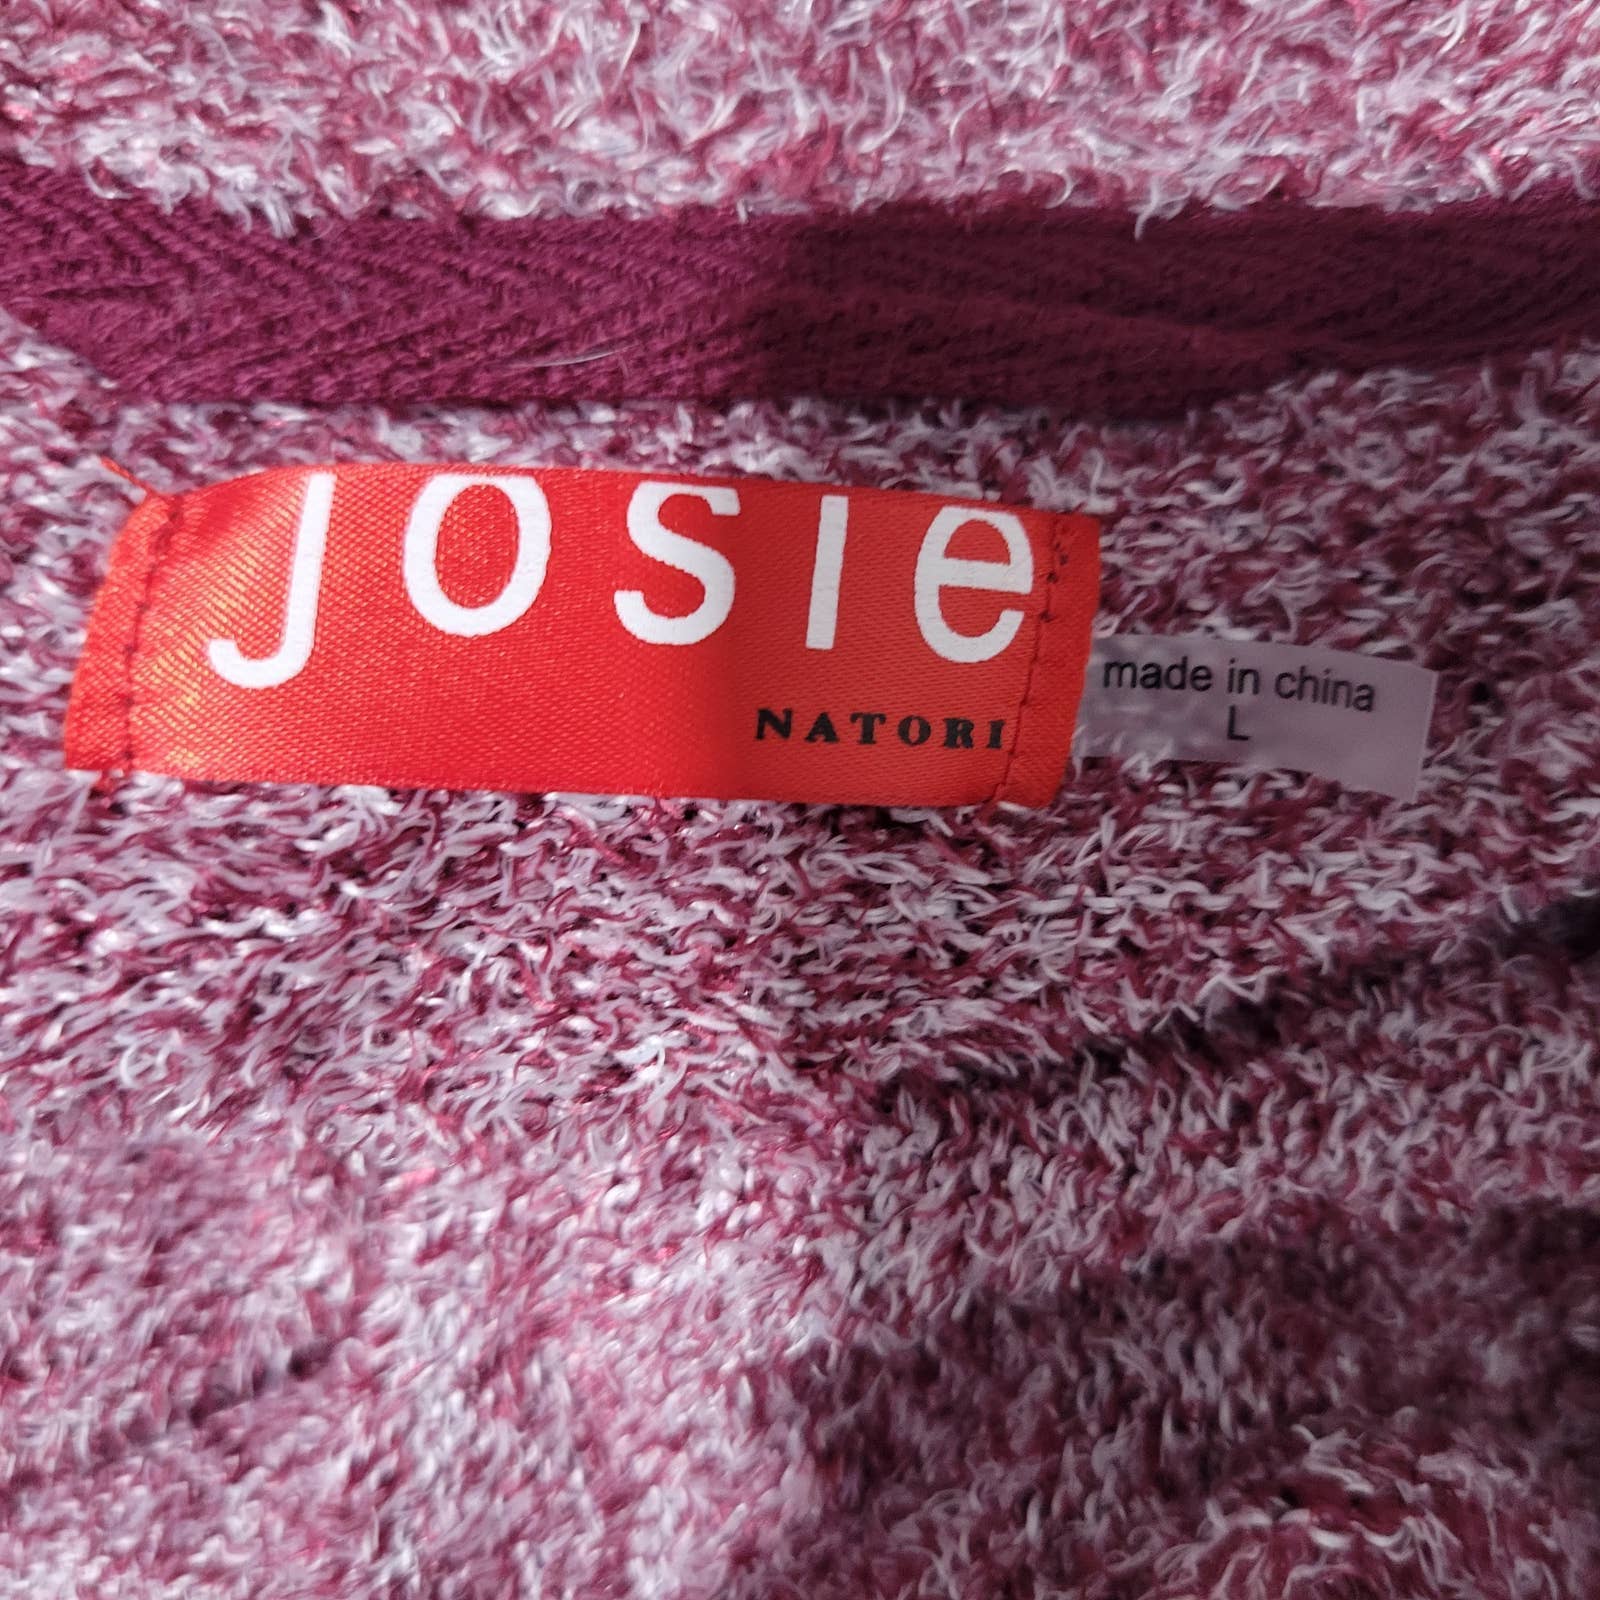 Josie Natori Sweater Weather Wrap Long Cardigan Robe Soft Fuzzy Teddy Size Large